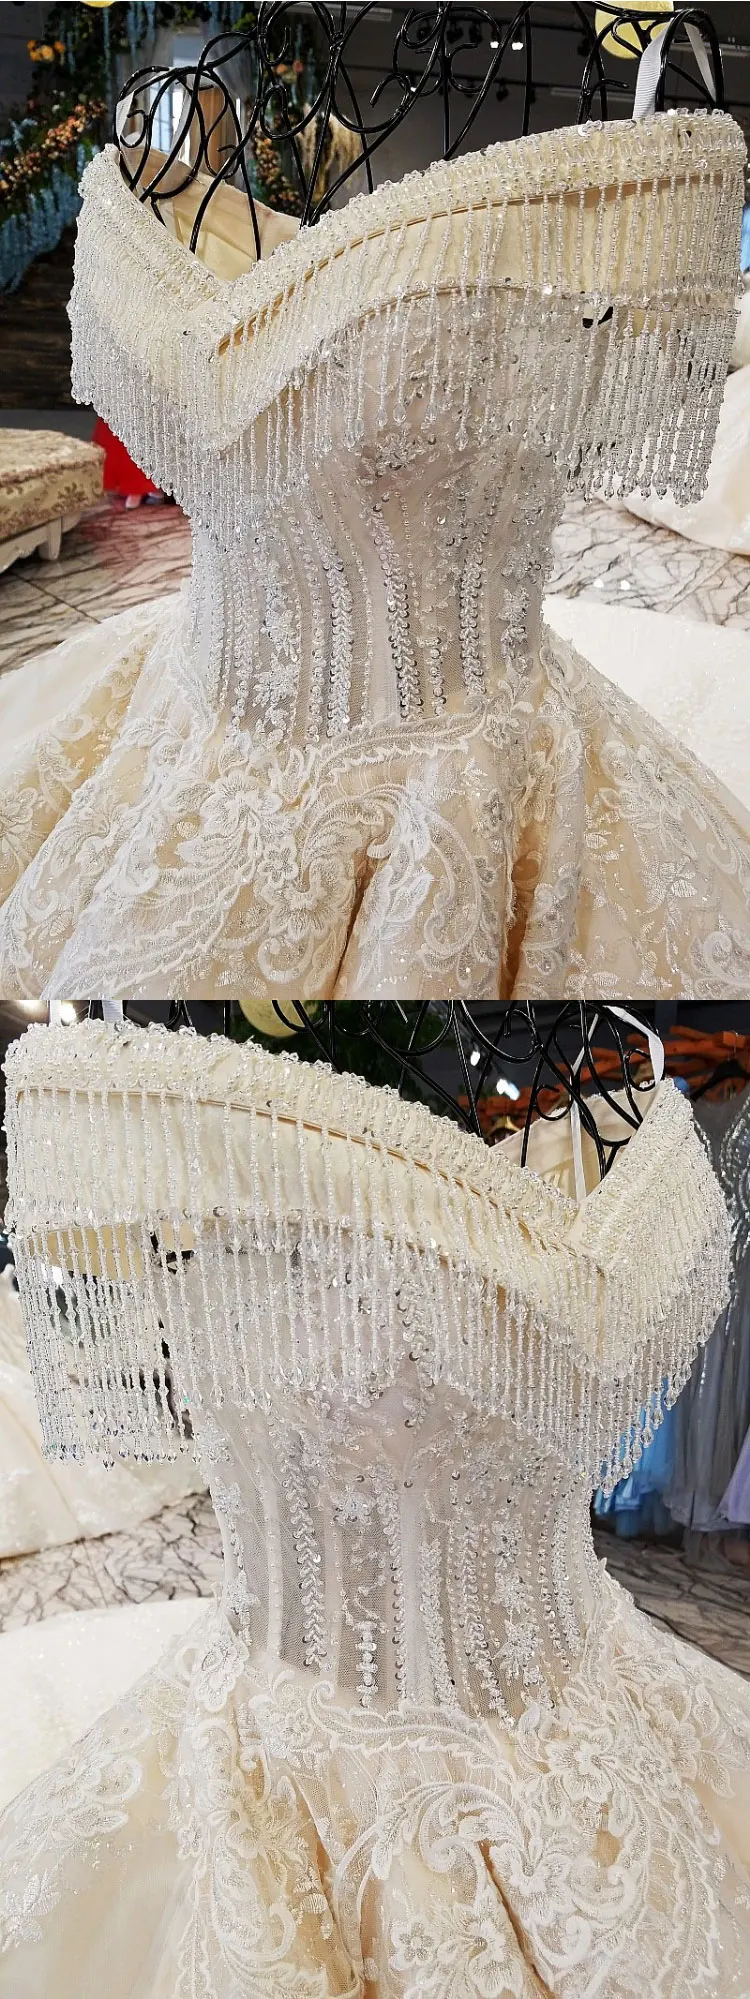 AIJINGYU принцесса свадебные платья Роскошные настоящие образцы магазин платьиц шары Летние покупки мексиканское свадебное платье